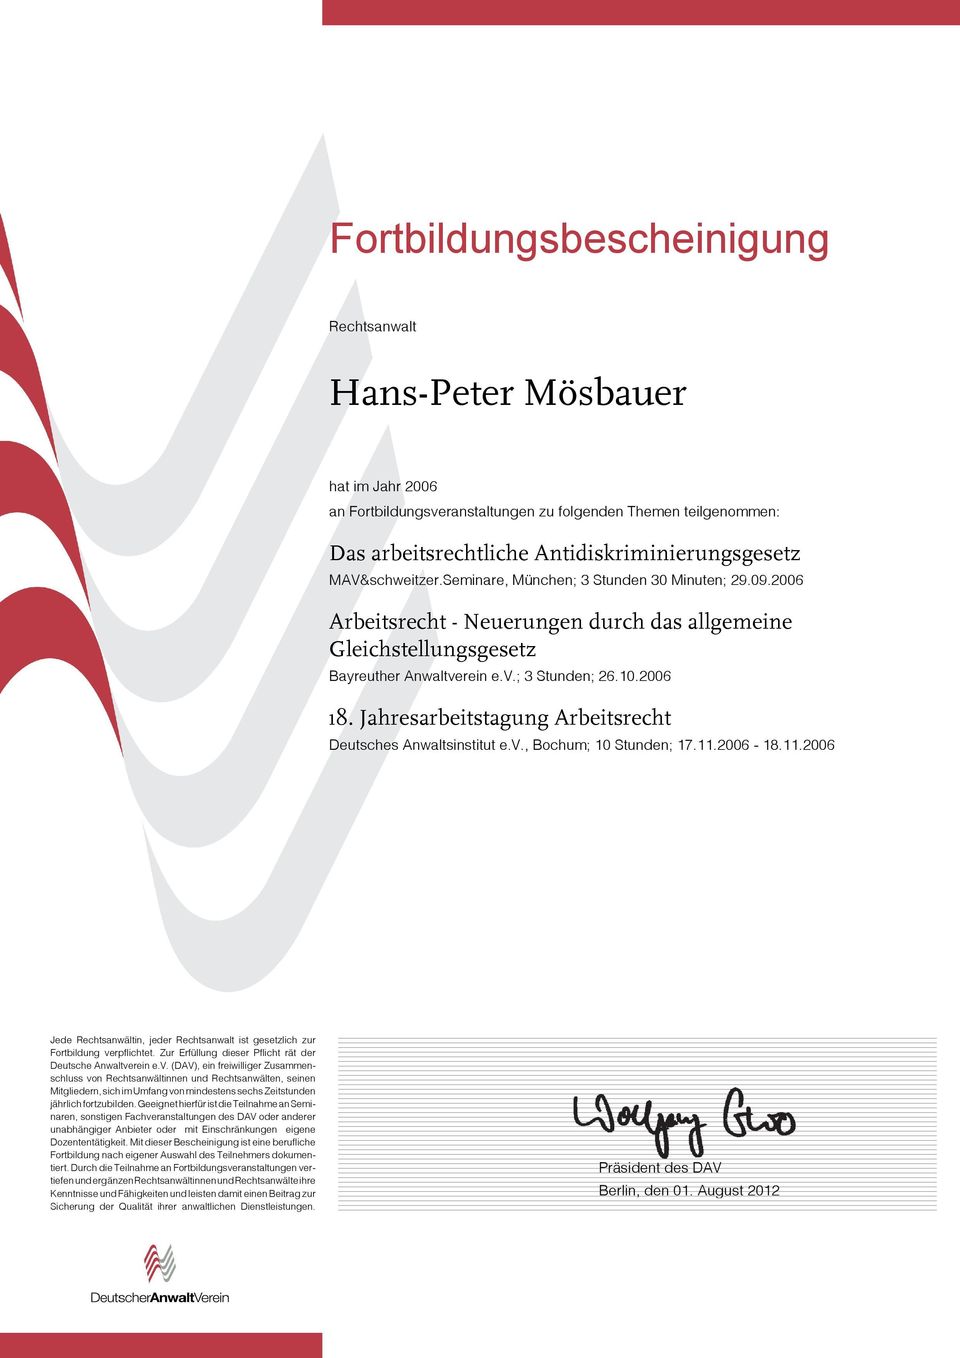 2006 Arbeitsrecht - Neuerungen durch das allgemeine Gleichstellungsgesetz Bayreuther Anwaltve